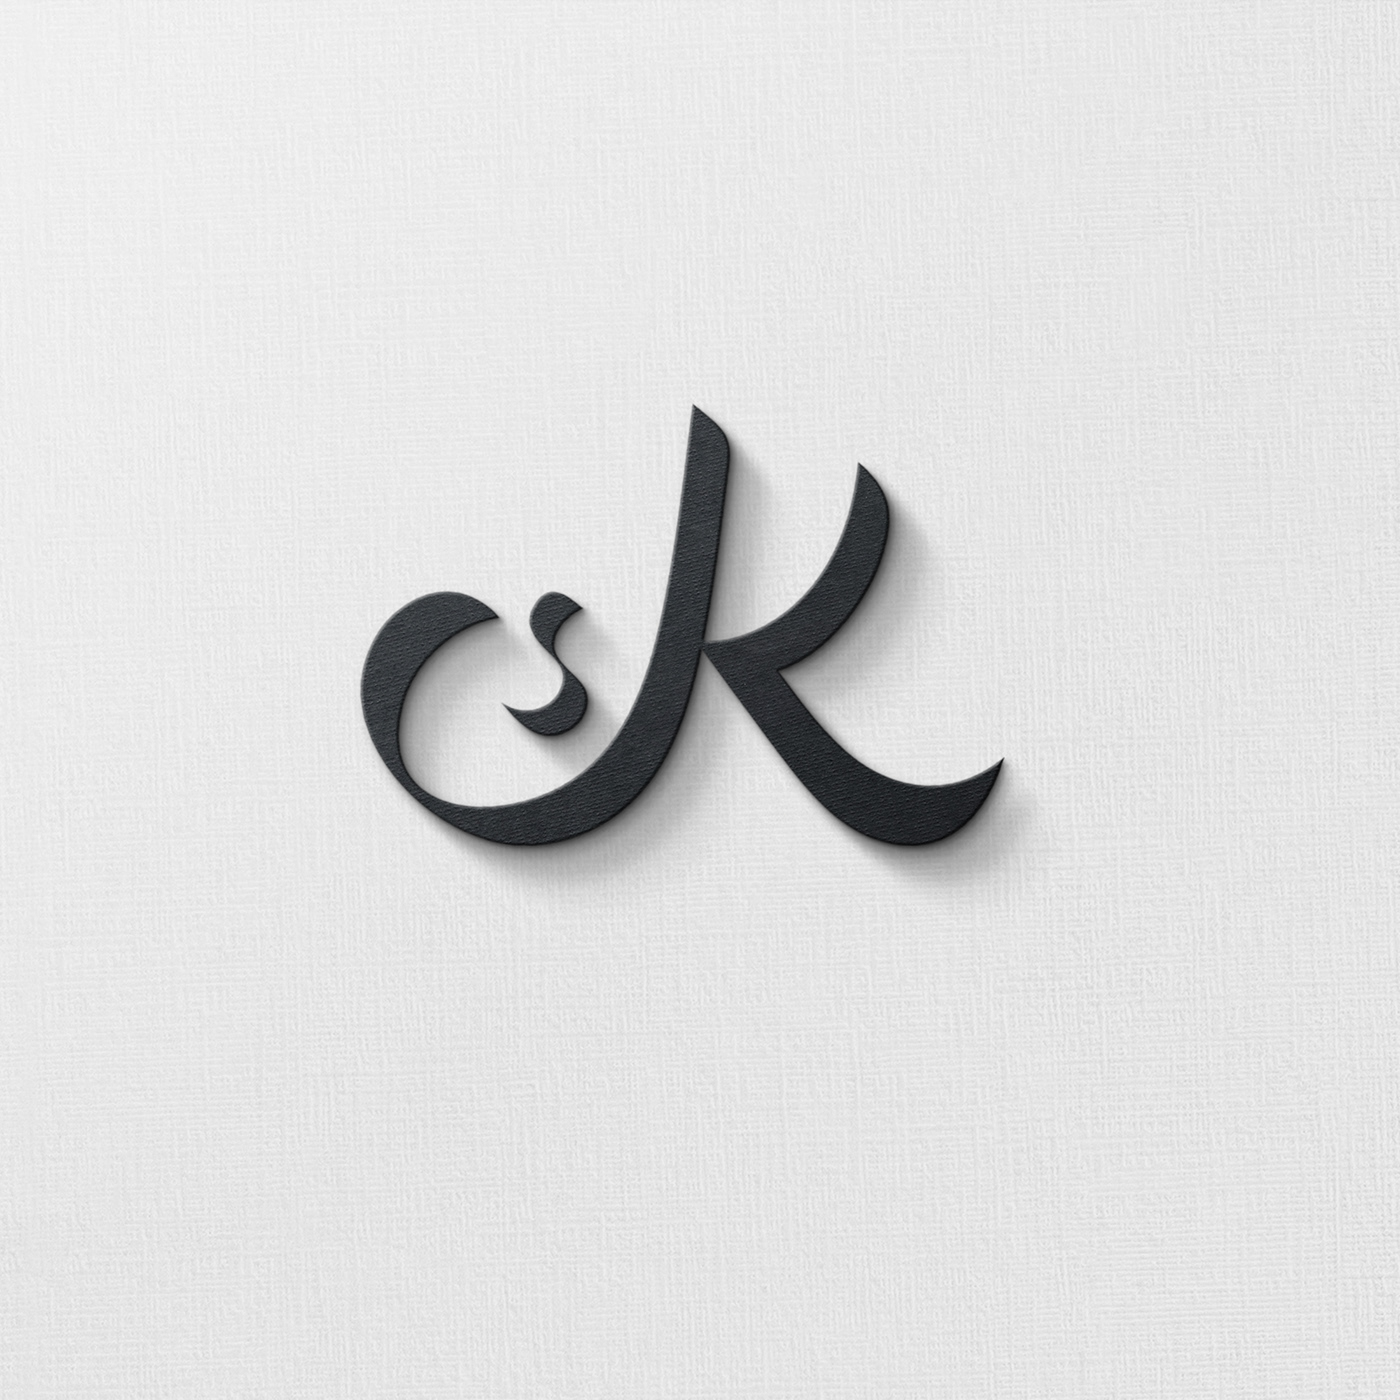 arabic arabic calligraphy arabic typography Arabic logo Arab 老母店铺 الطيور   تصميم